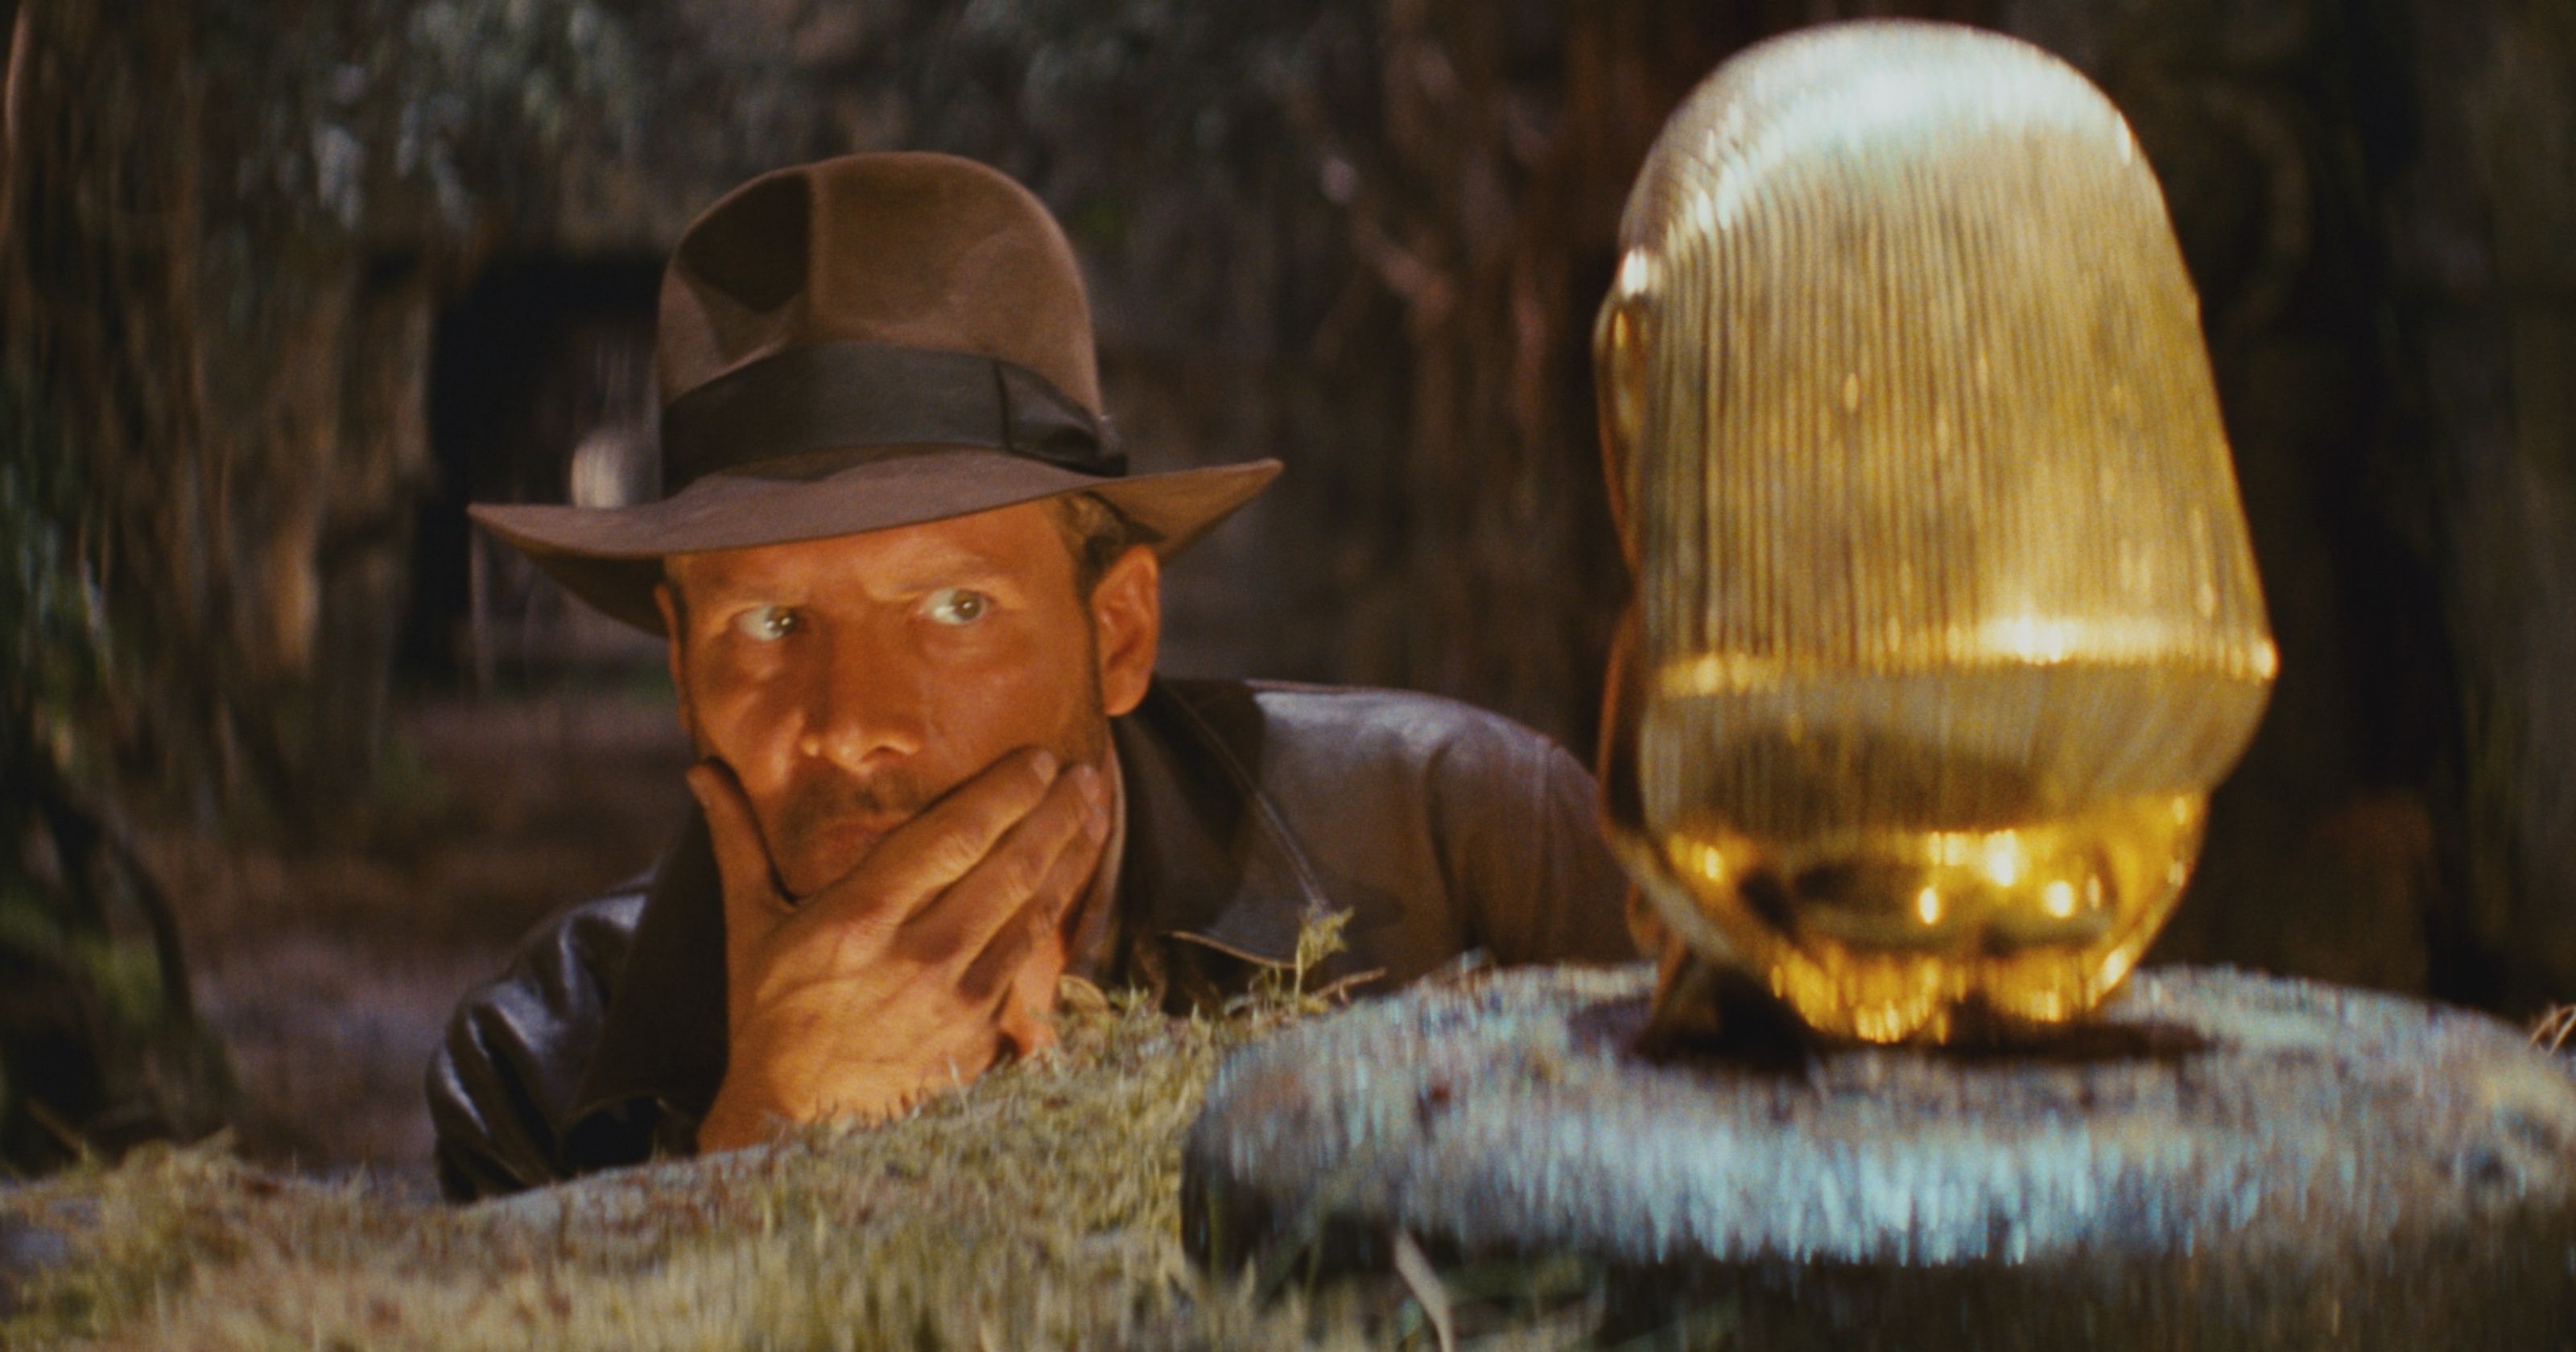 Steven Spielberg Reveals Indiana Jones 5 to Begin Filming in April 2019